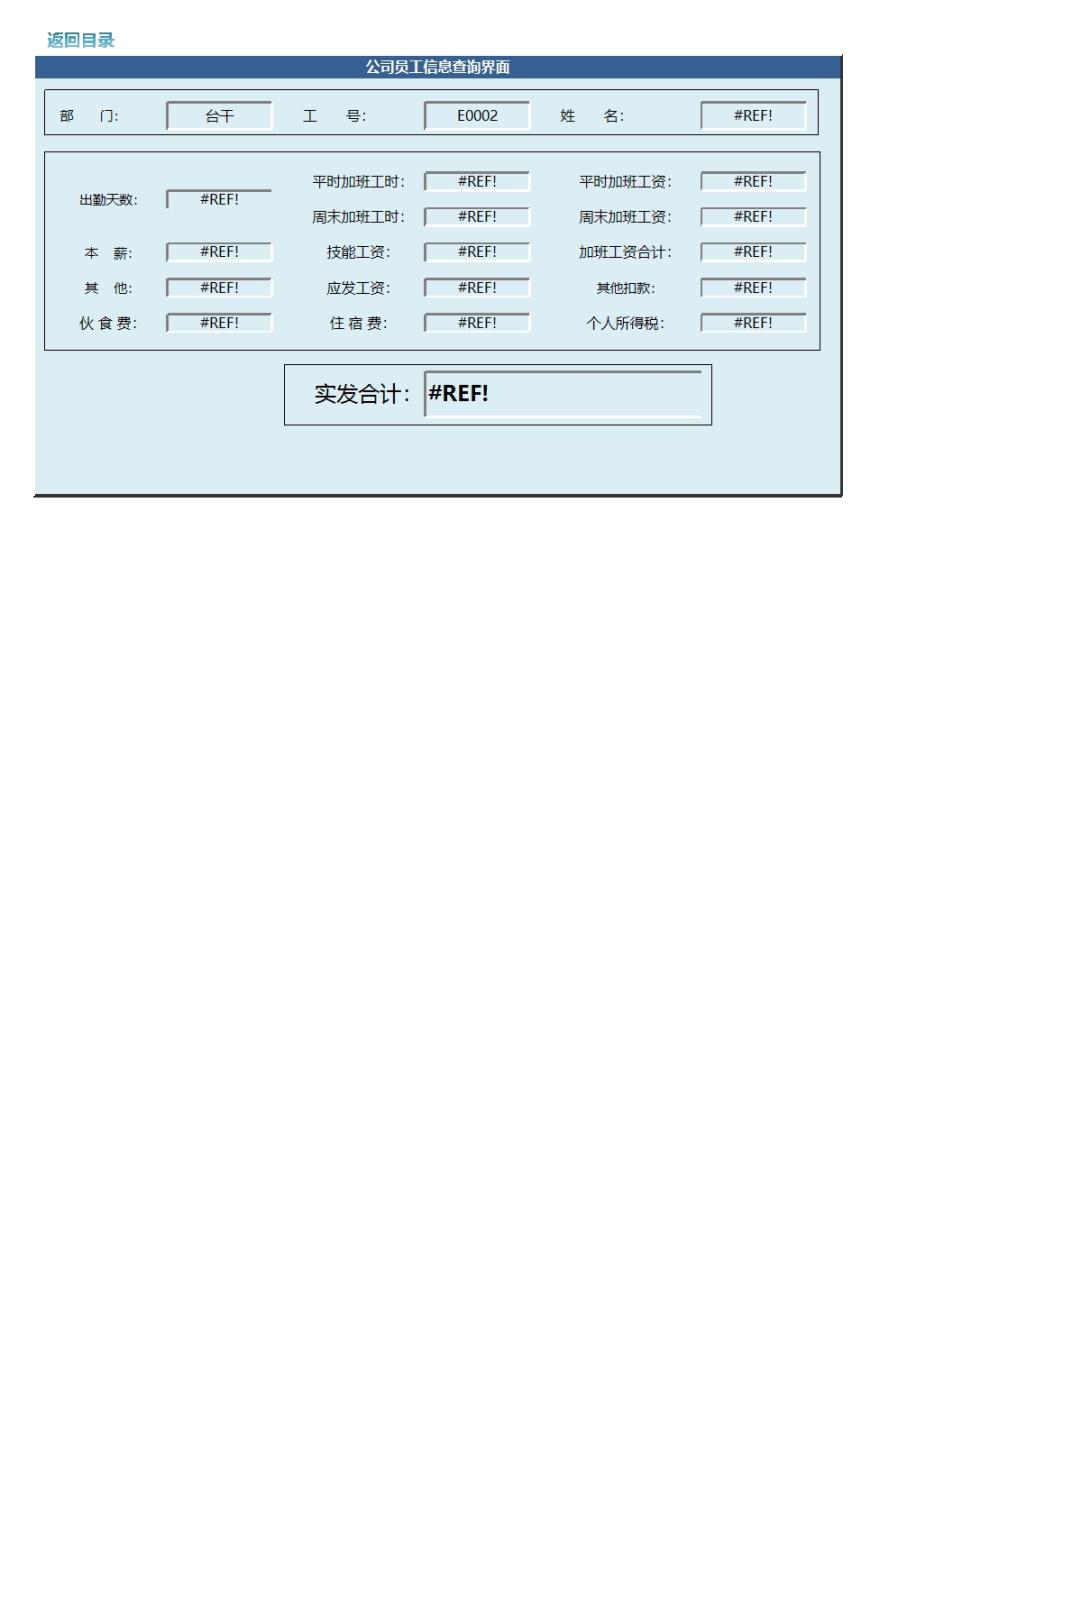 工资管理系统(六大模块)Excel模板_03